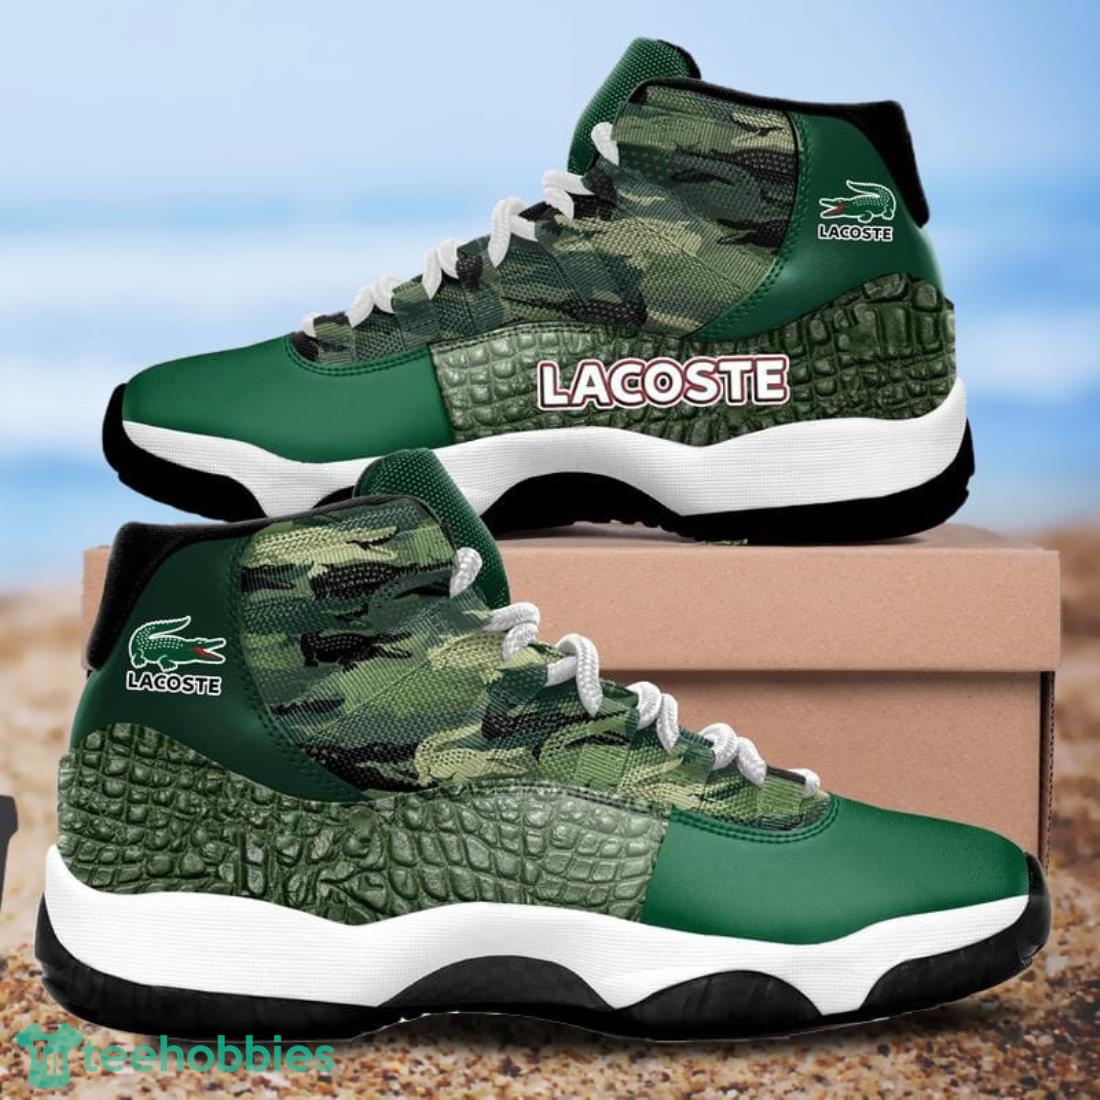 Lacoste Air Jordan Shoes For Women